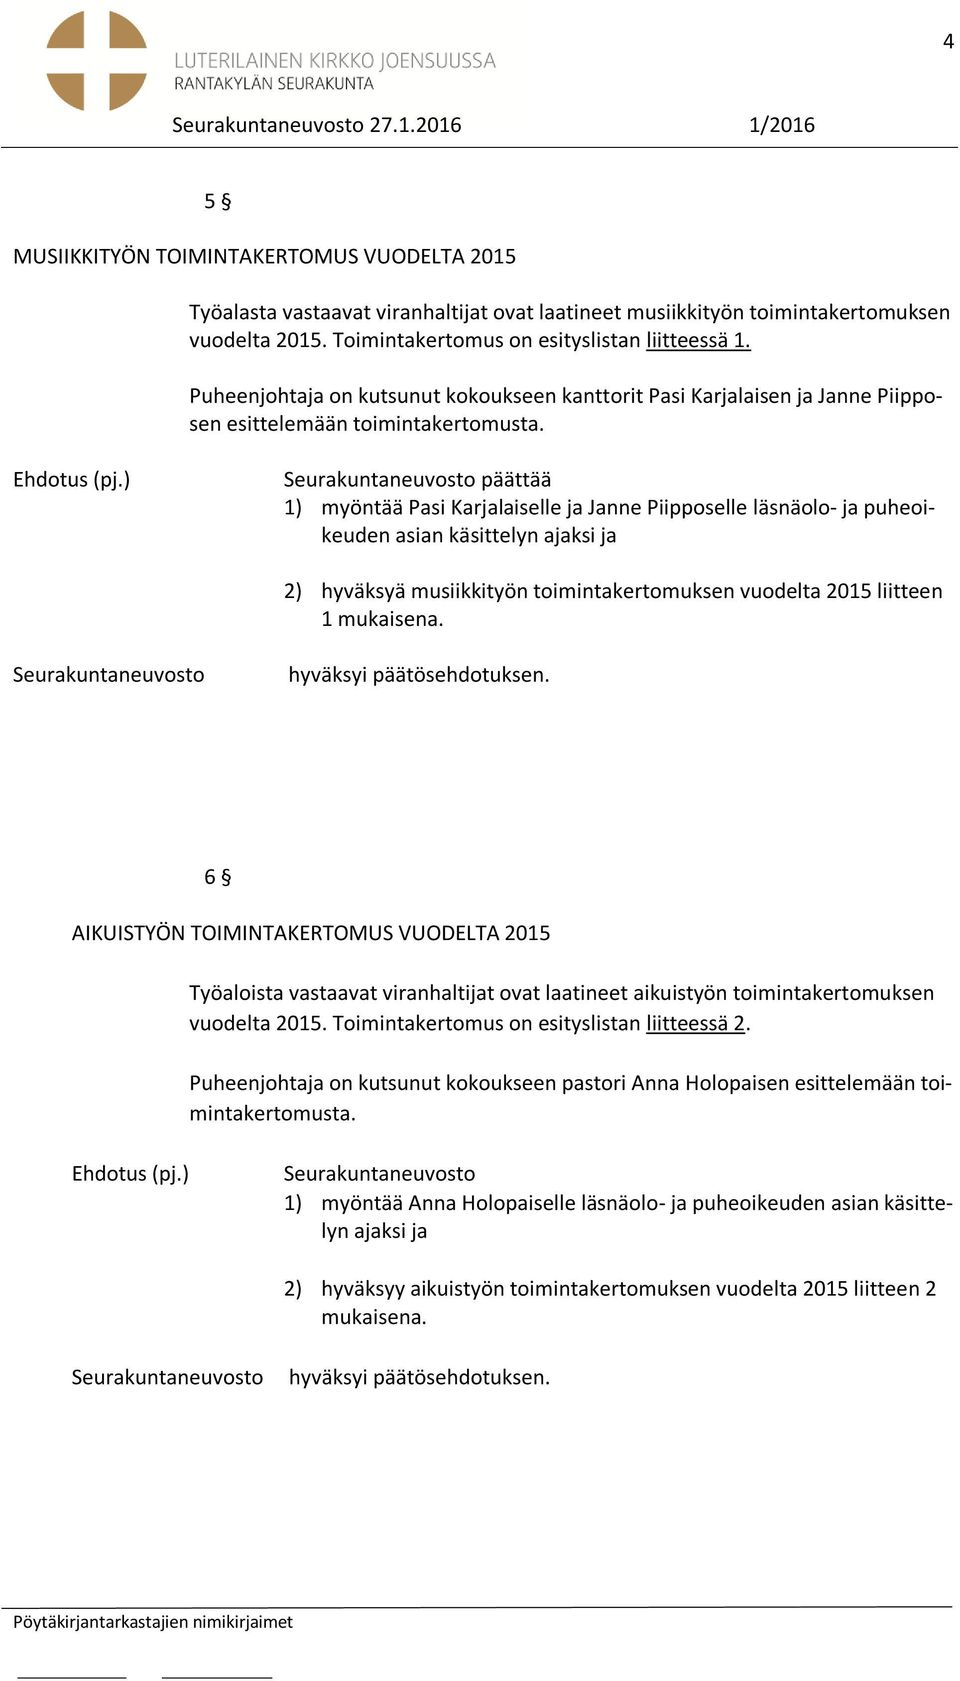 päättää 1) myöntää Pasi Karjalaiselle ja Janne Piipposelle läsnäolo- ja puheoikeuden asian käsittelyn ajaksi ja 2) hyväksyä musiikkityön toimintakertomuksen vuodelta 2015 liitteen 1 mukaisena.